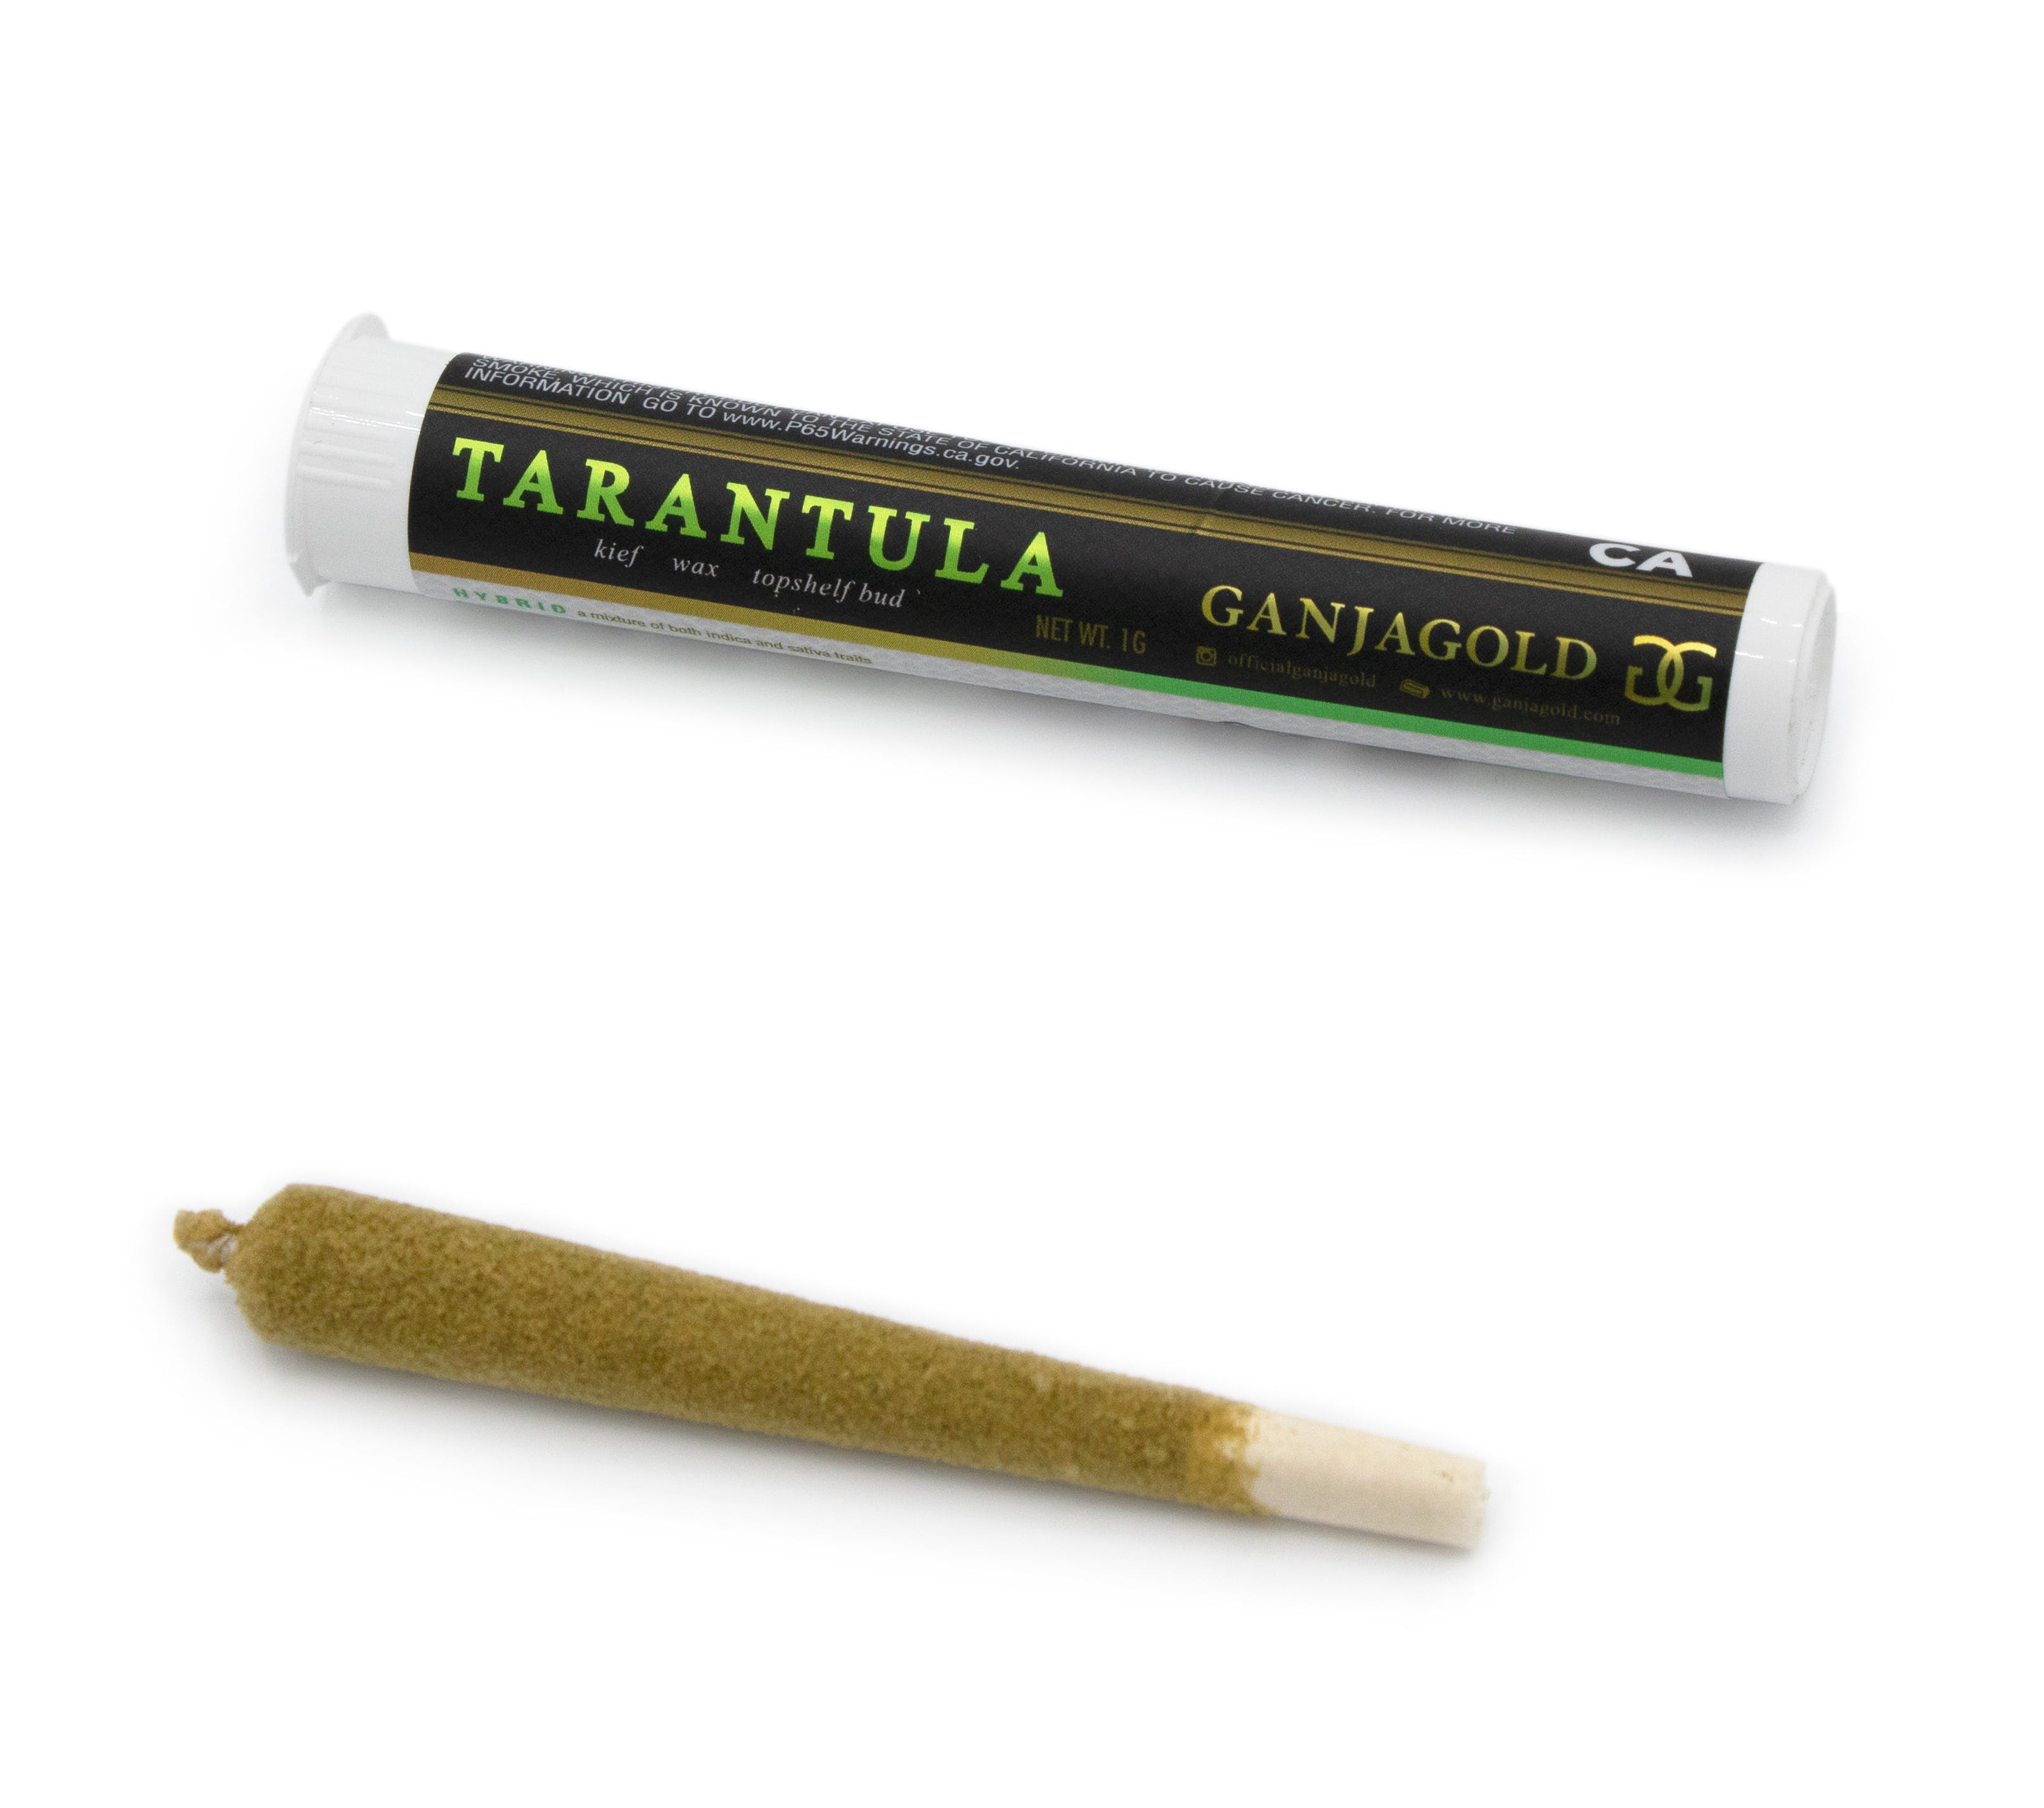 marijuana-dispensaries-davis-cannabis-collective-in-davis-ganja-gold-green-tarantula